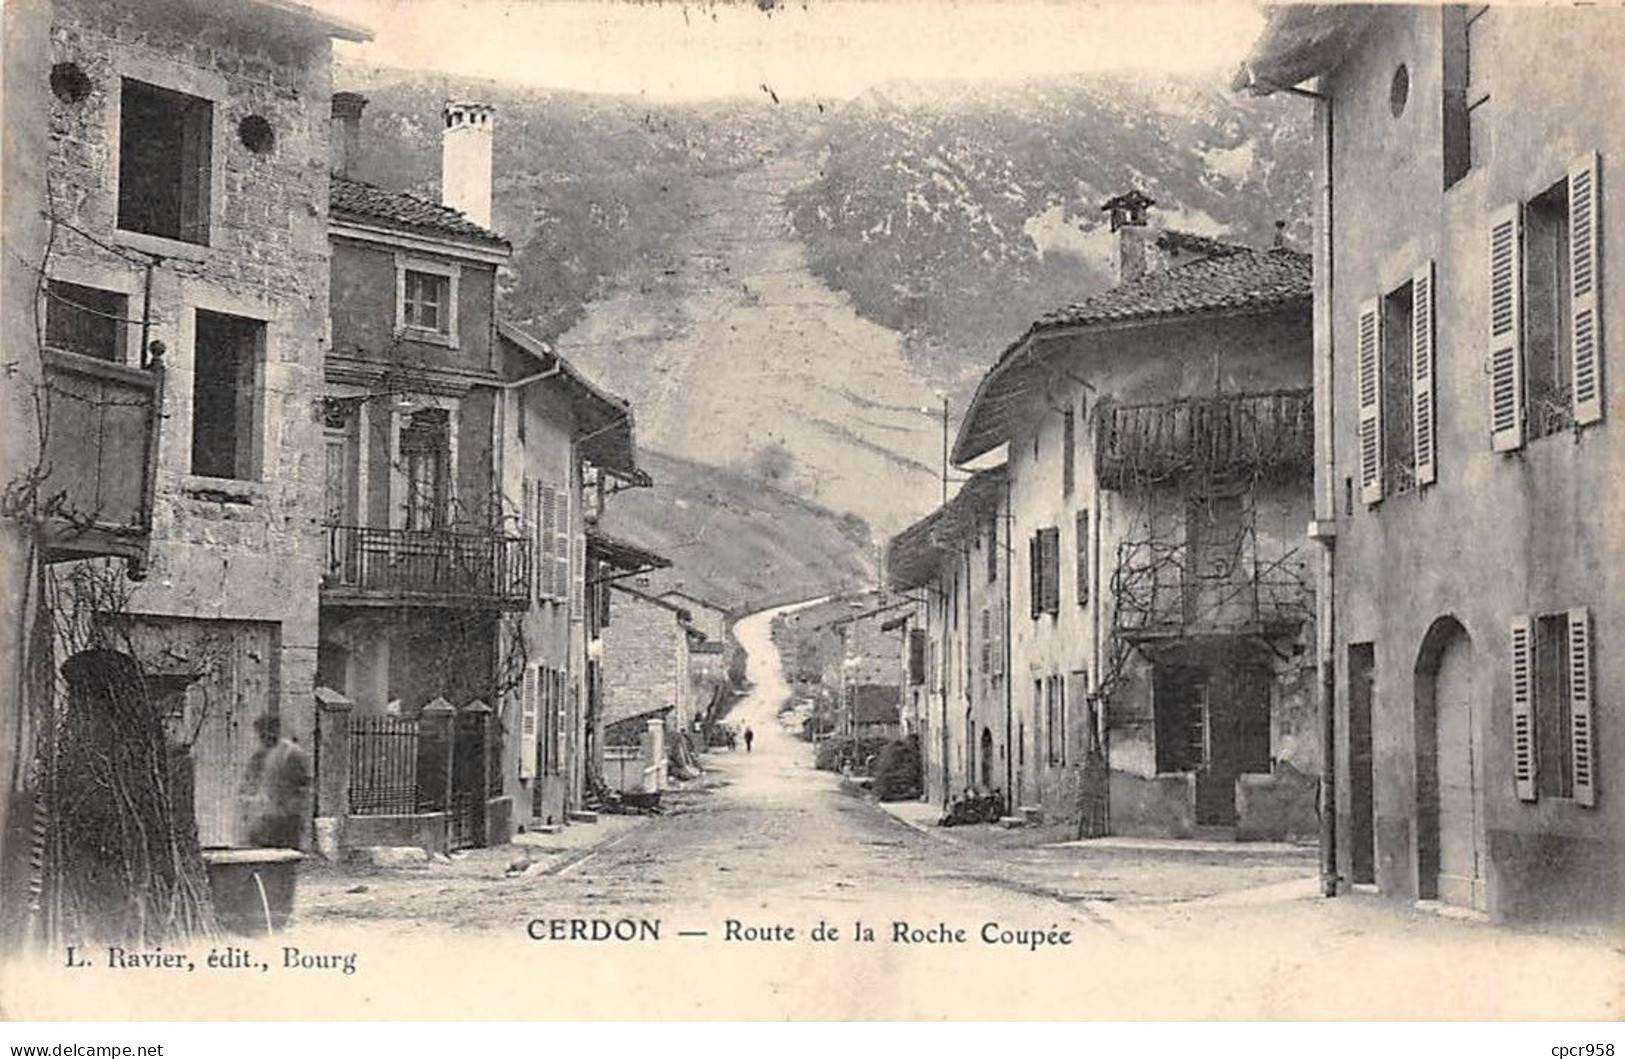 01 - CERDON - SAN45736 - Route De La Roche Coupée - Unclassified